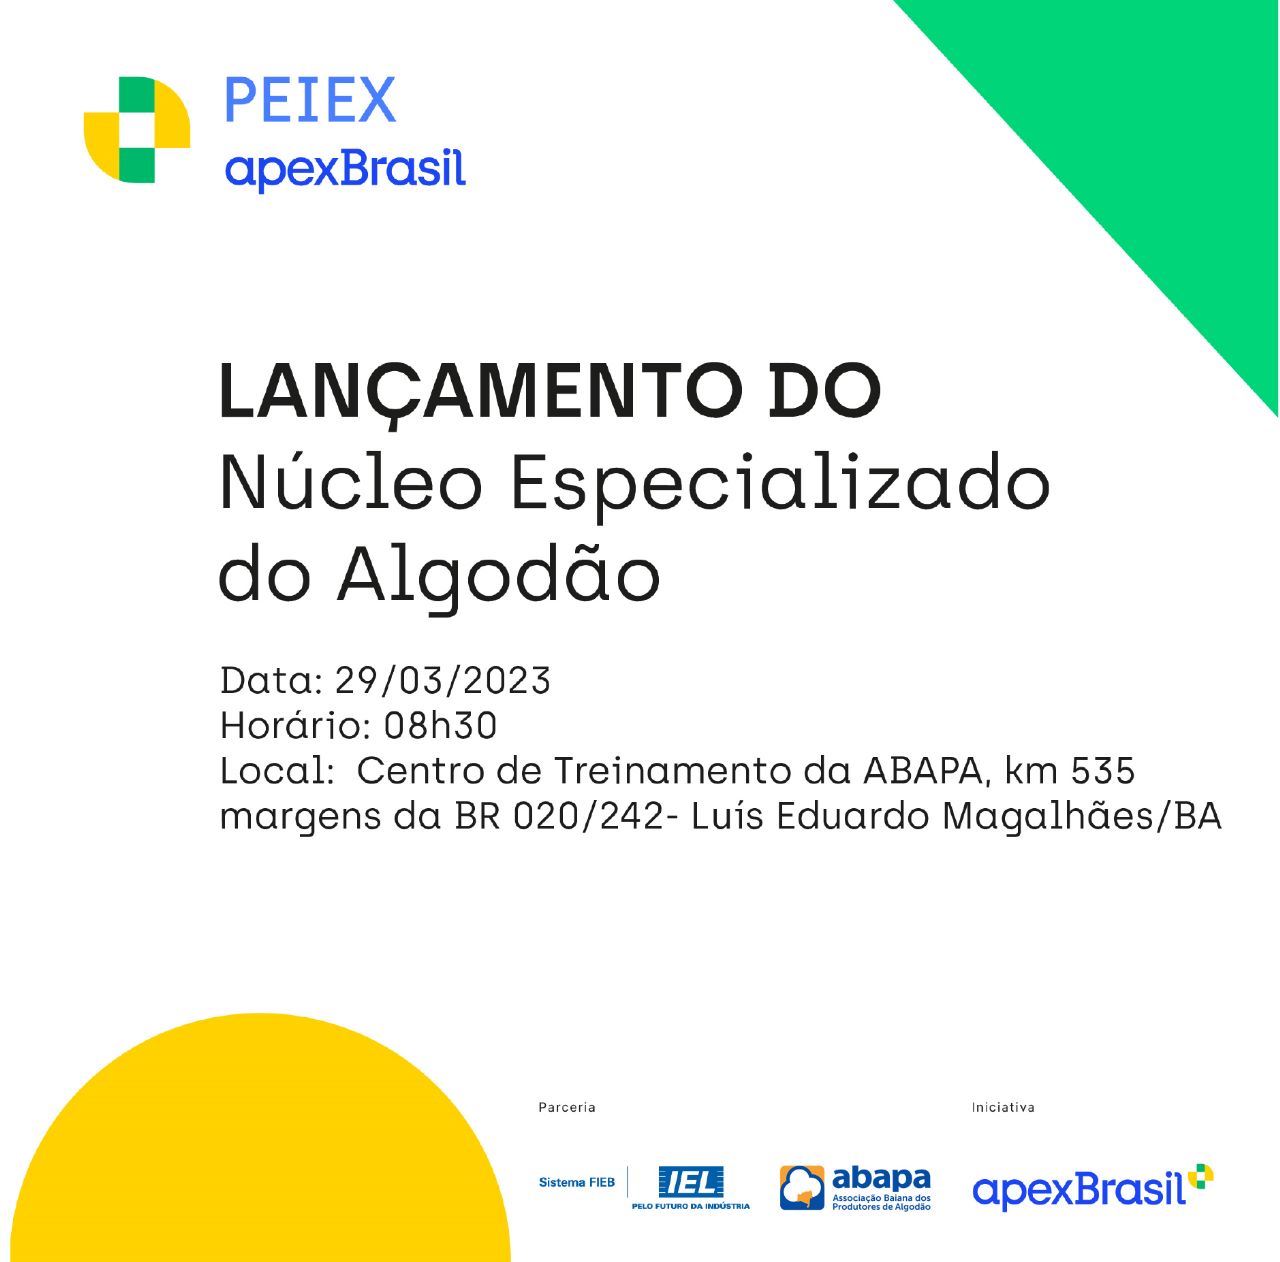 Apex-Brasil e IEL lançam Núcleo Especializado do Algodão no CT da